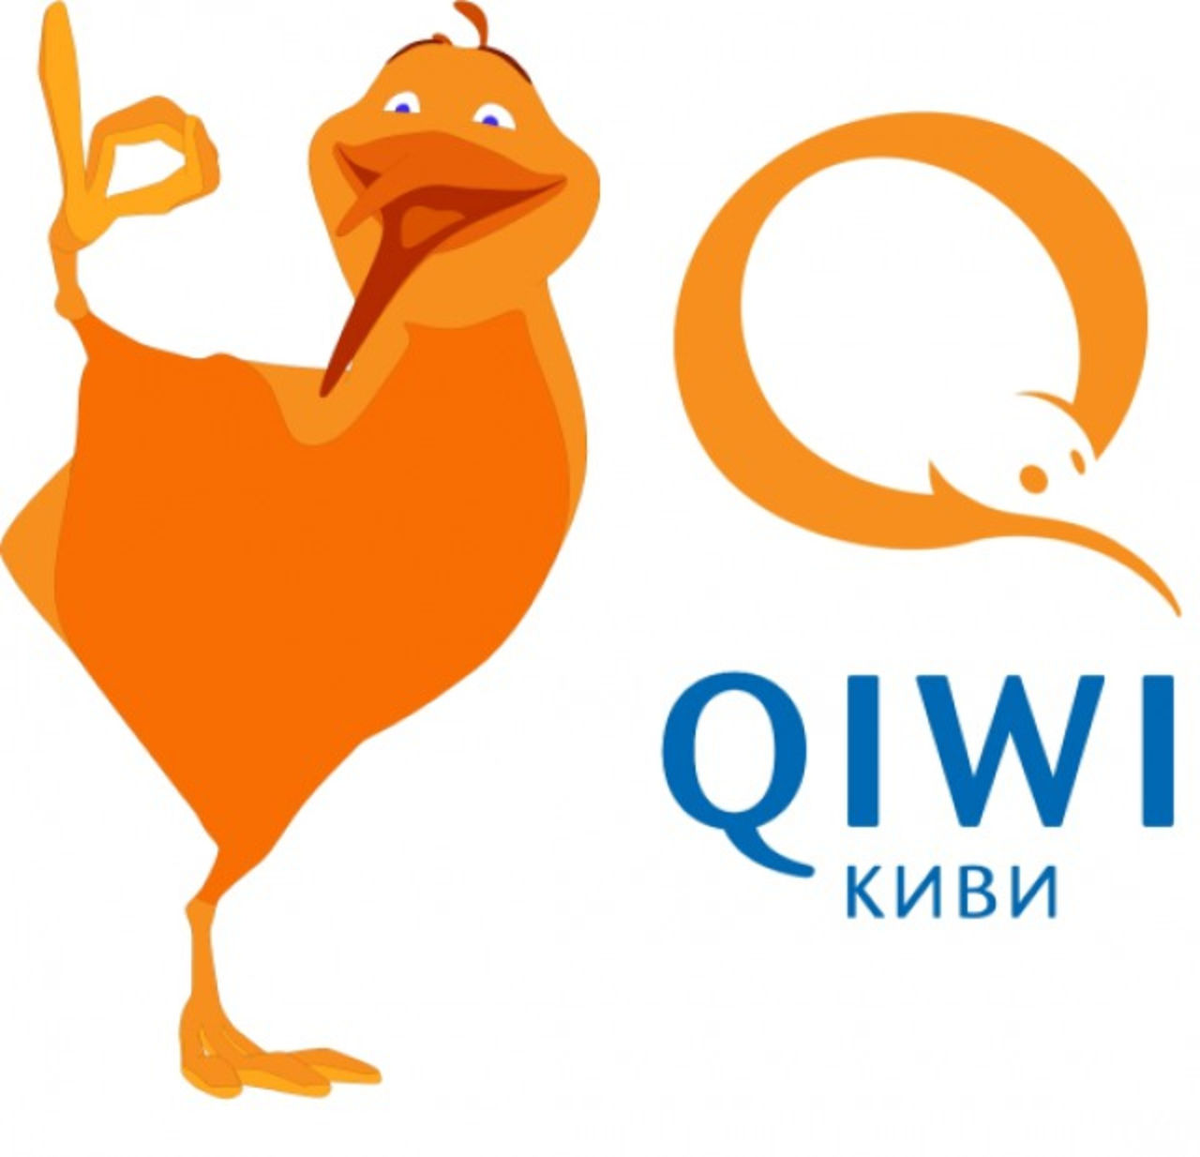 Qiwi чья компания. QIWI. QIWI кошелек. QIWI лого. Qiqi.